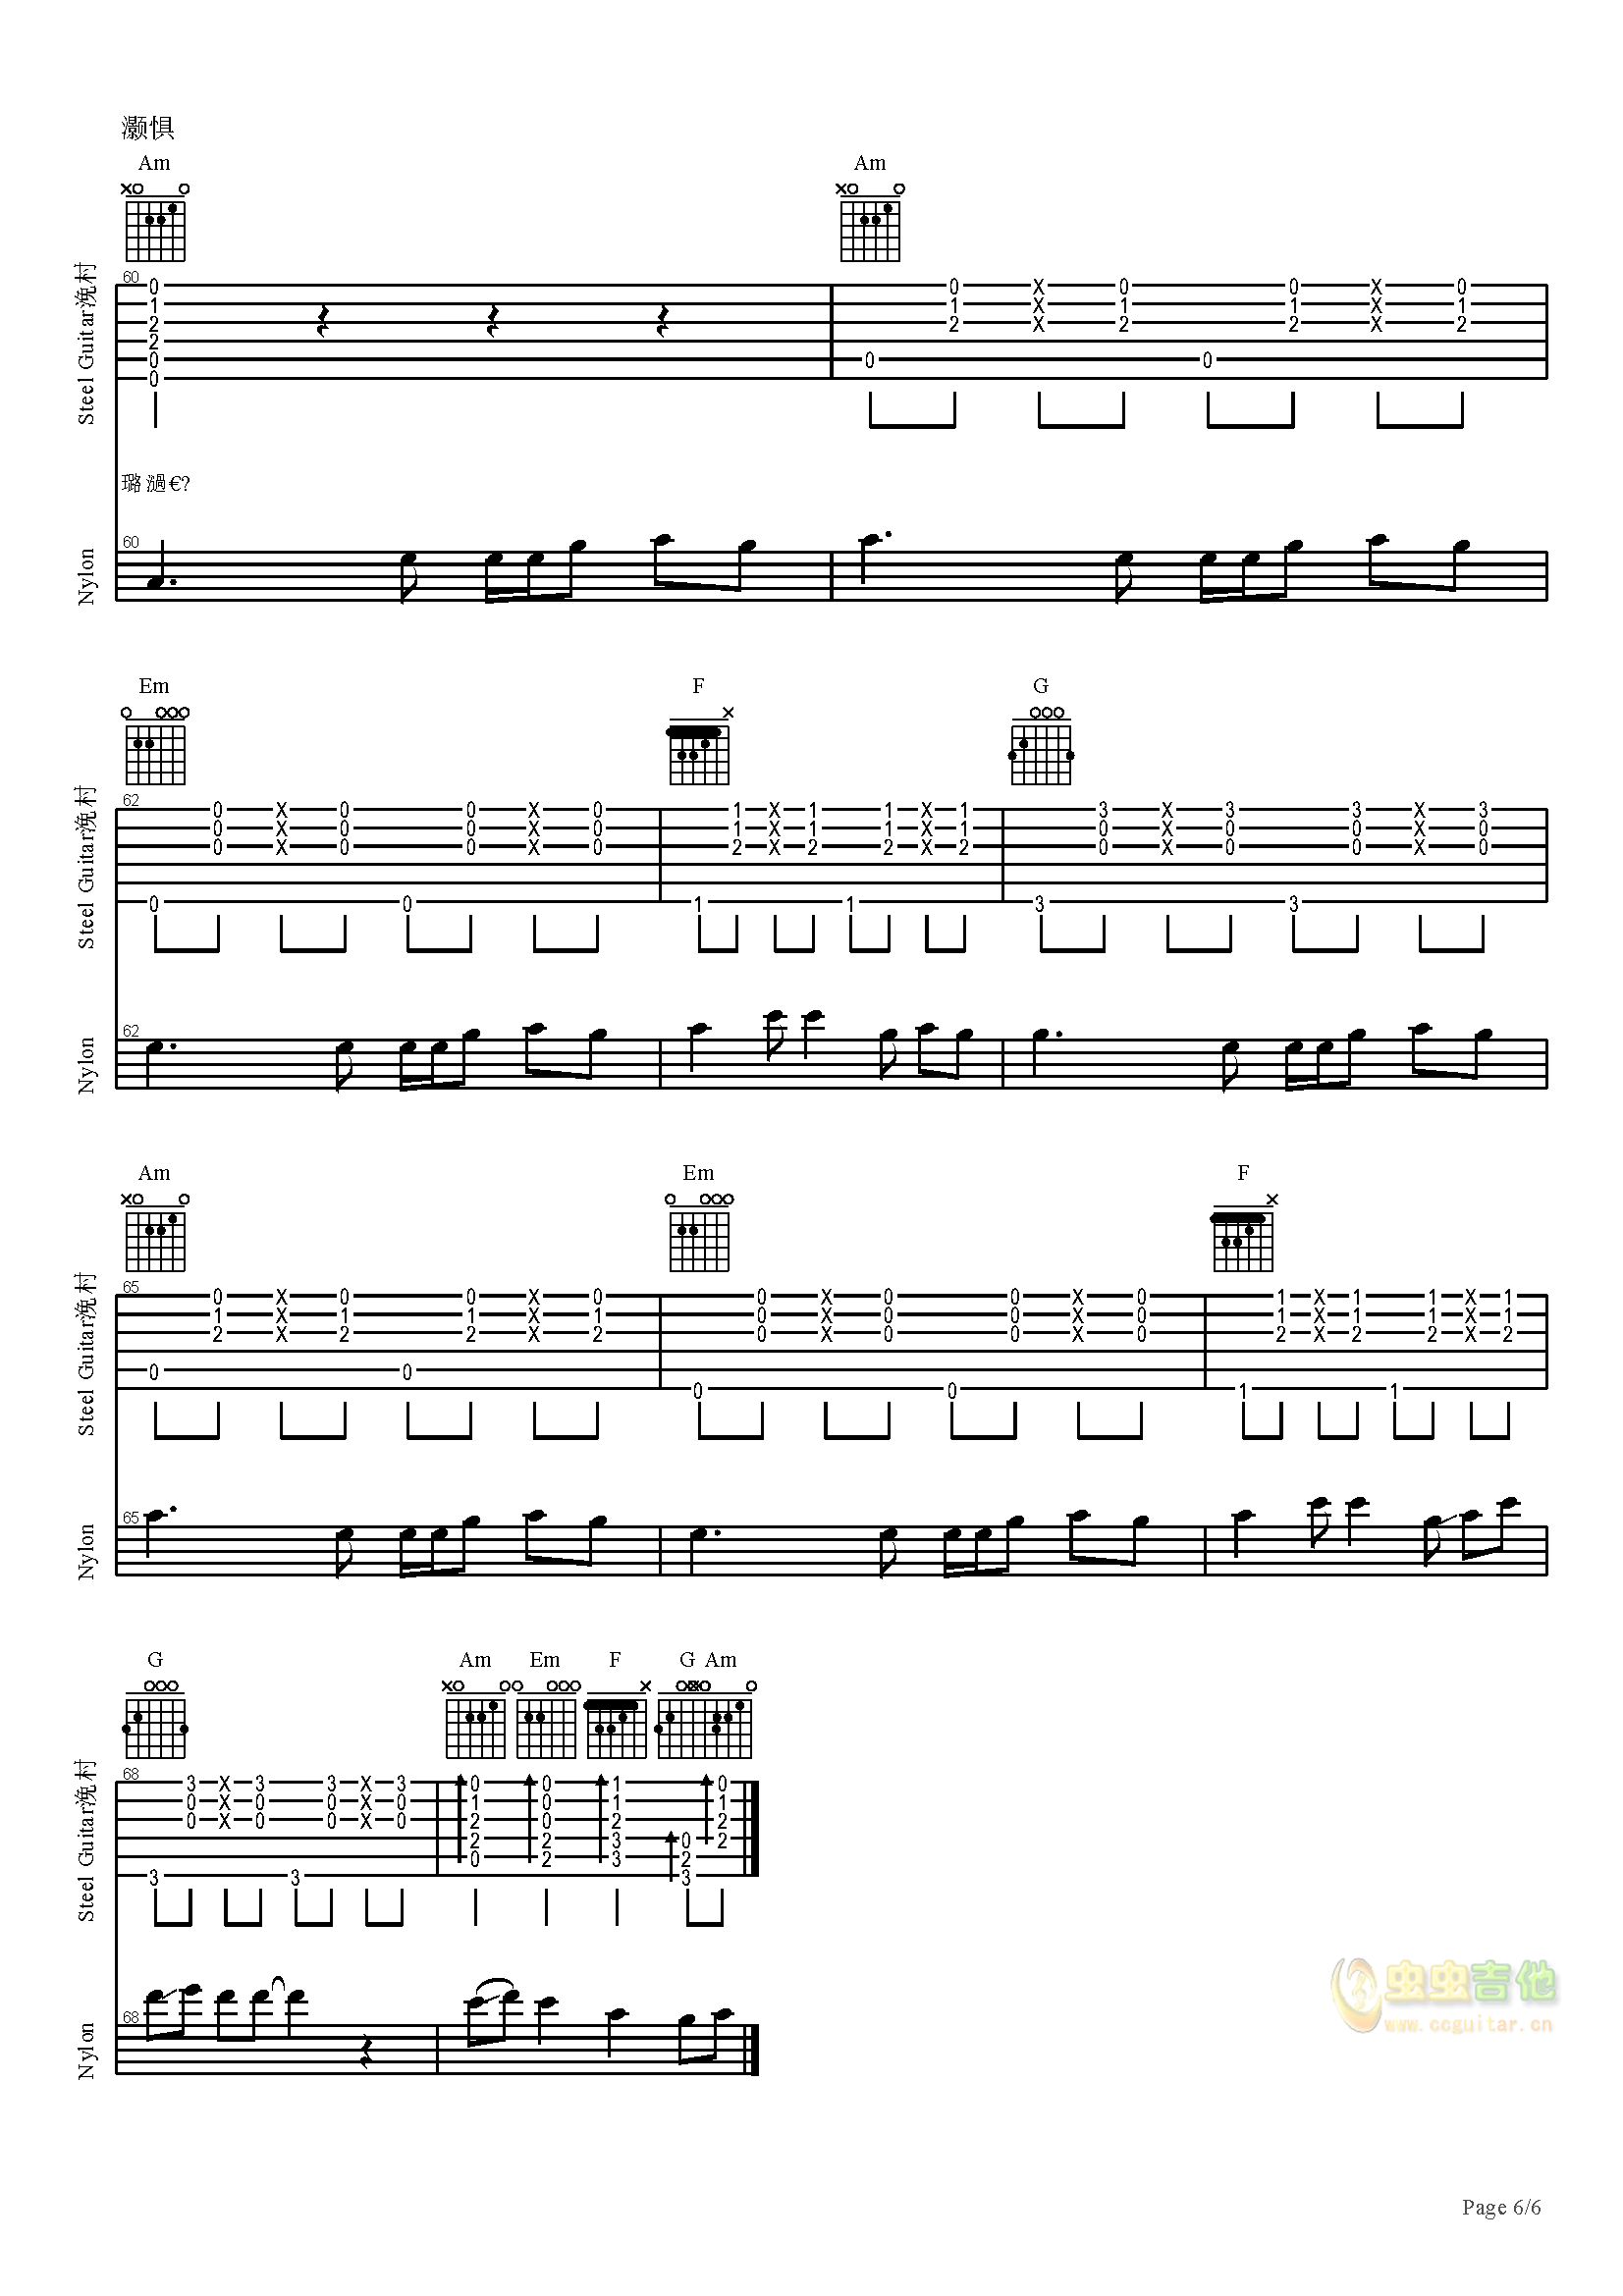 扫弦节奏练习 - 打谱啦吉他基础教程吉他教程谱 - 琴谱网